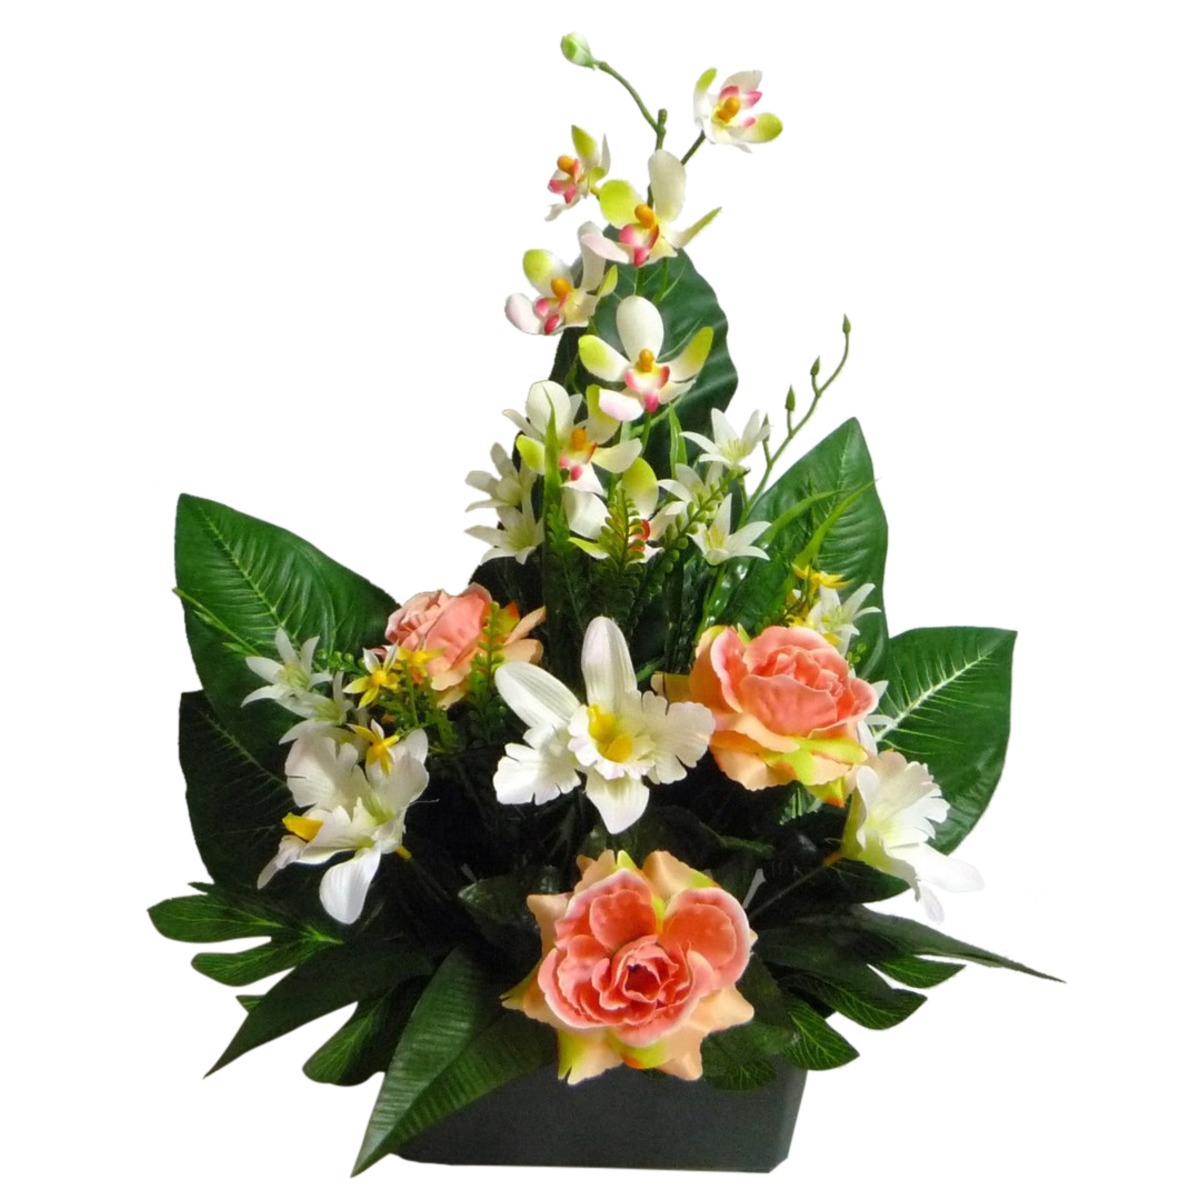 Jardinière roses + orchidées + feuilles - Hauteur 55 cm - Différents modèles